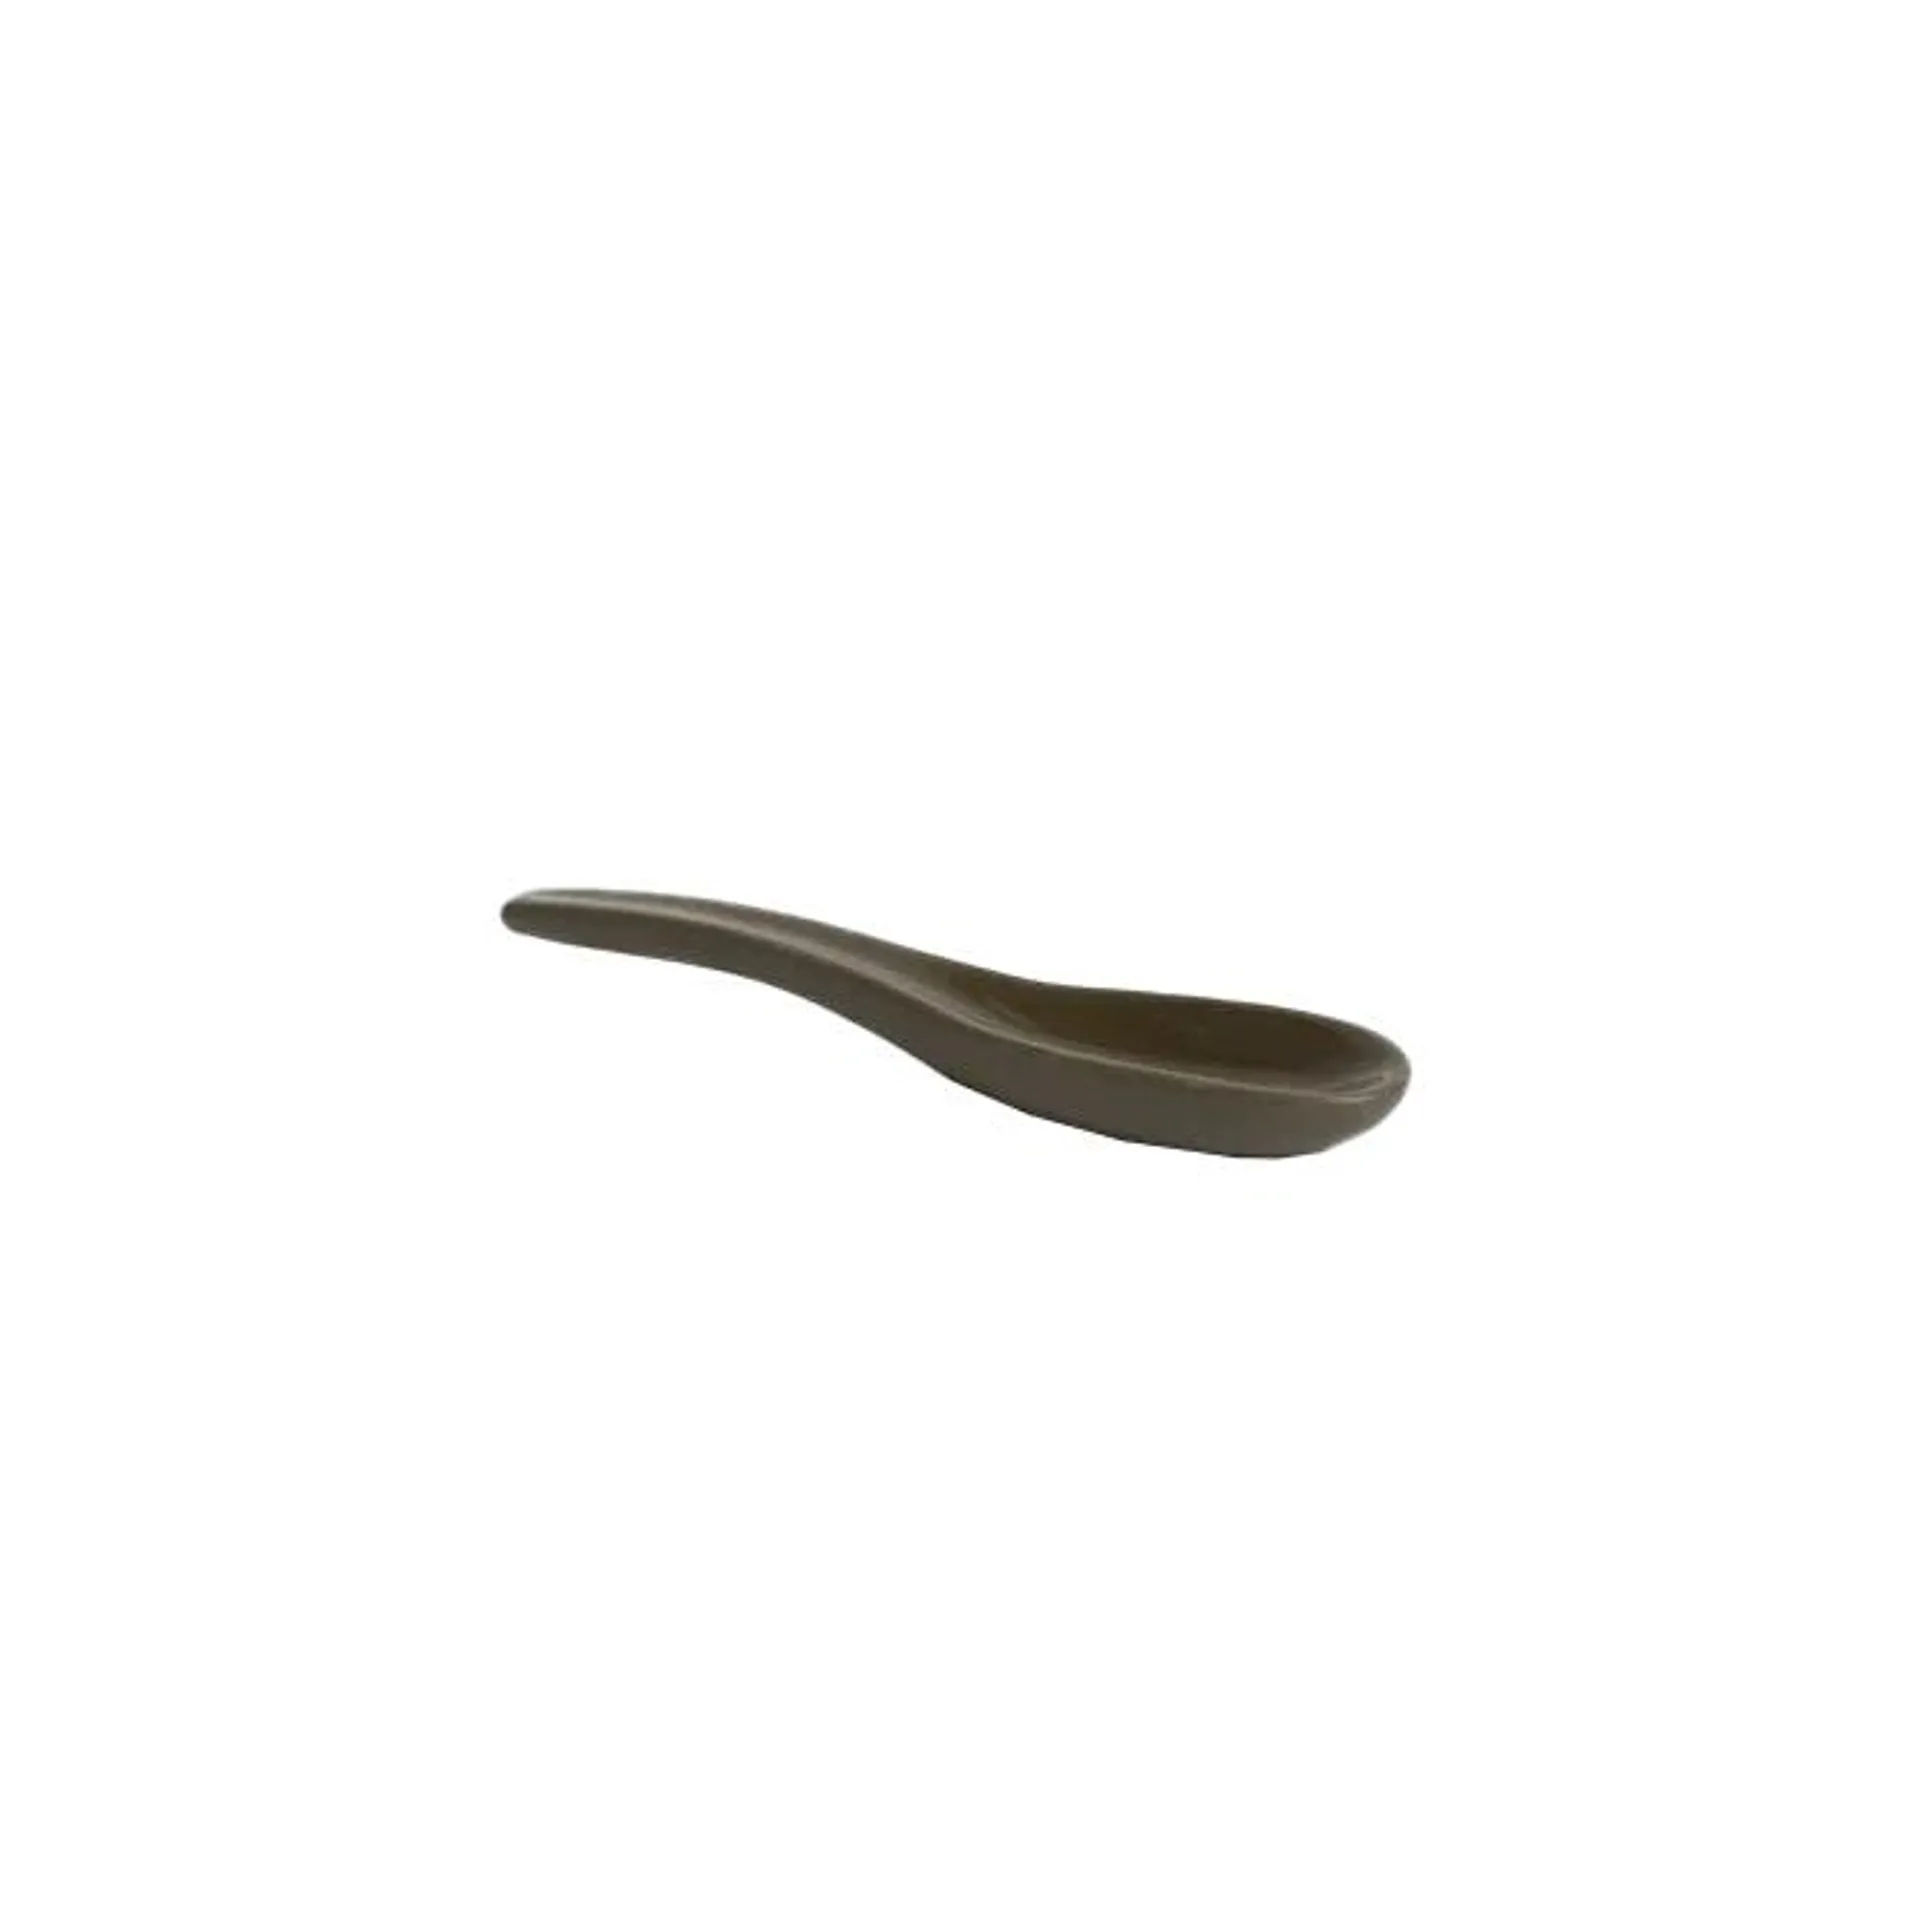 Ceramic spoon 10cm olive green